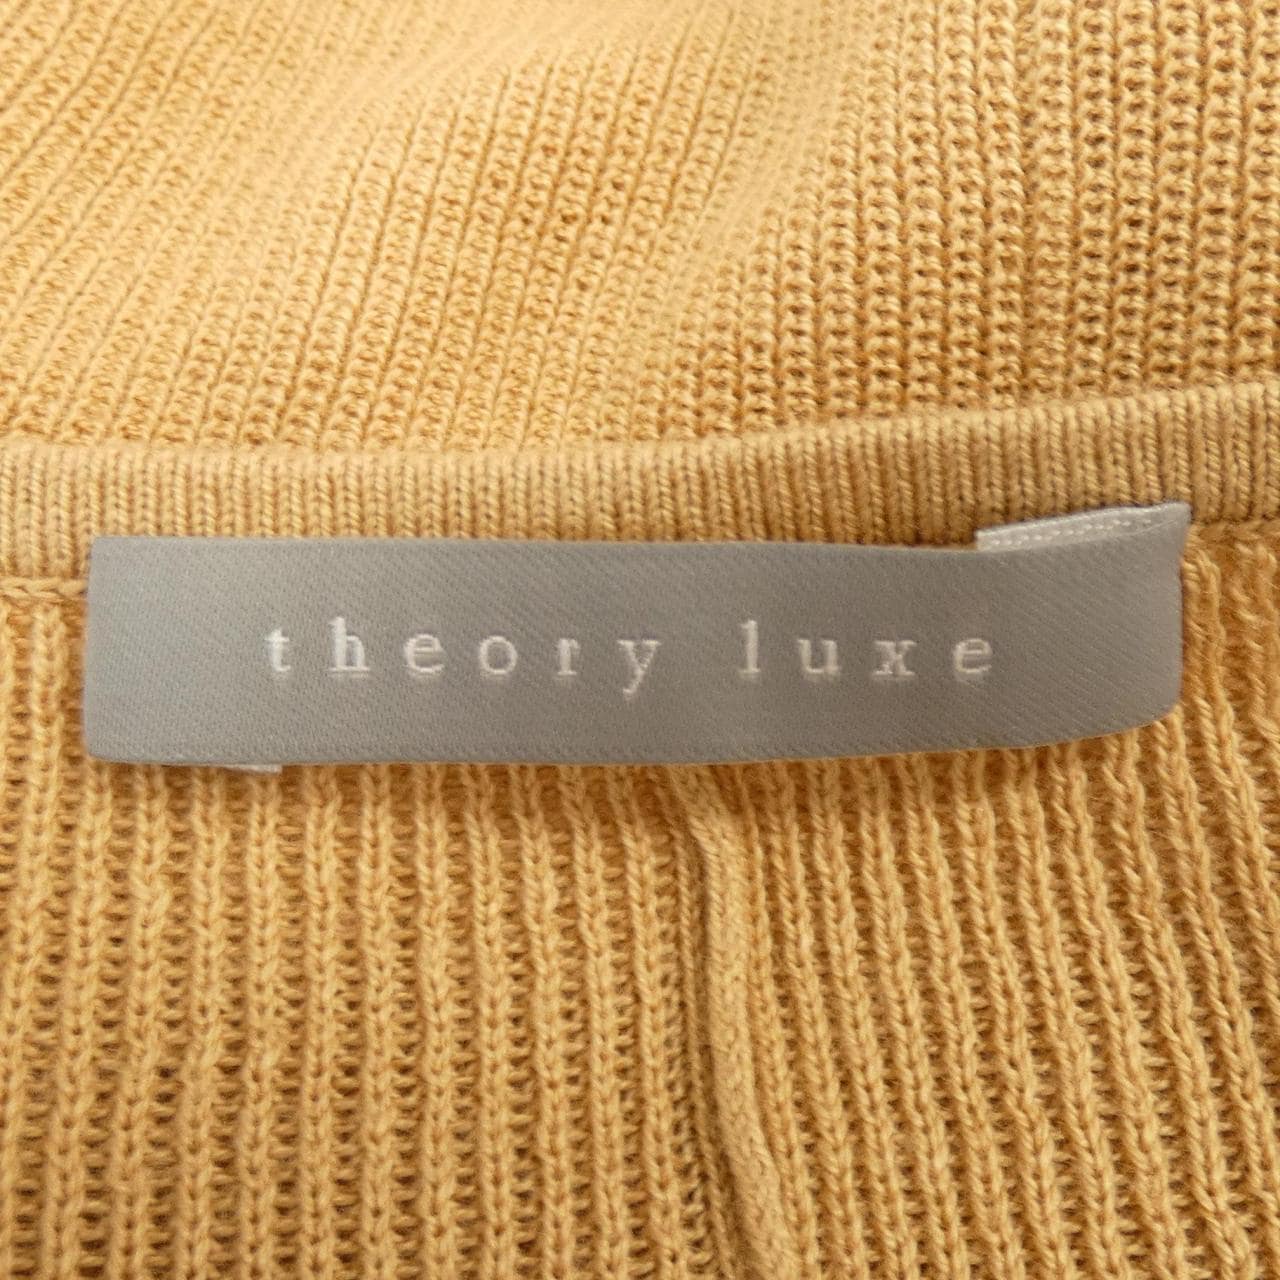 塞奧利柳克斯Theory luxe針織衫